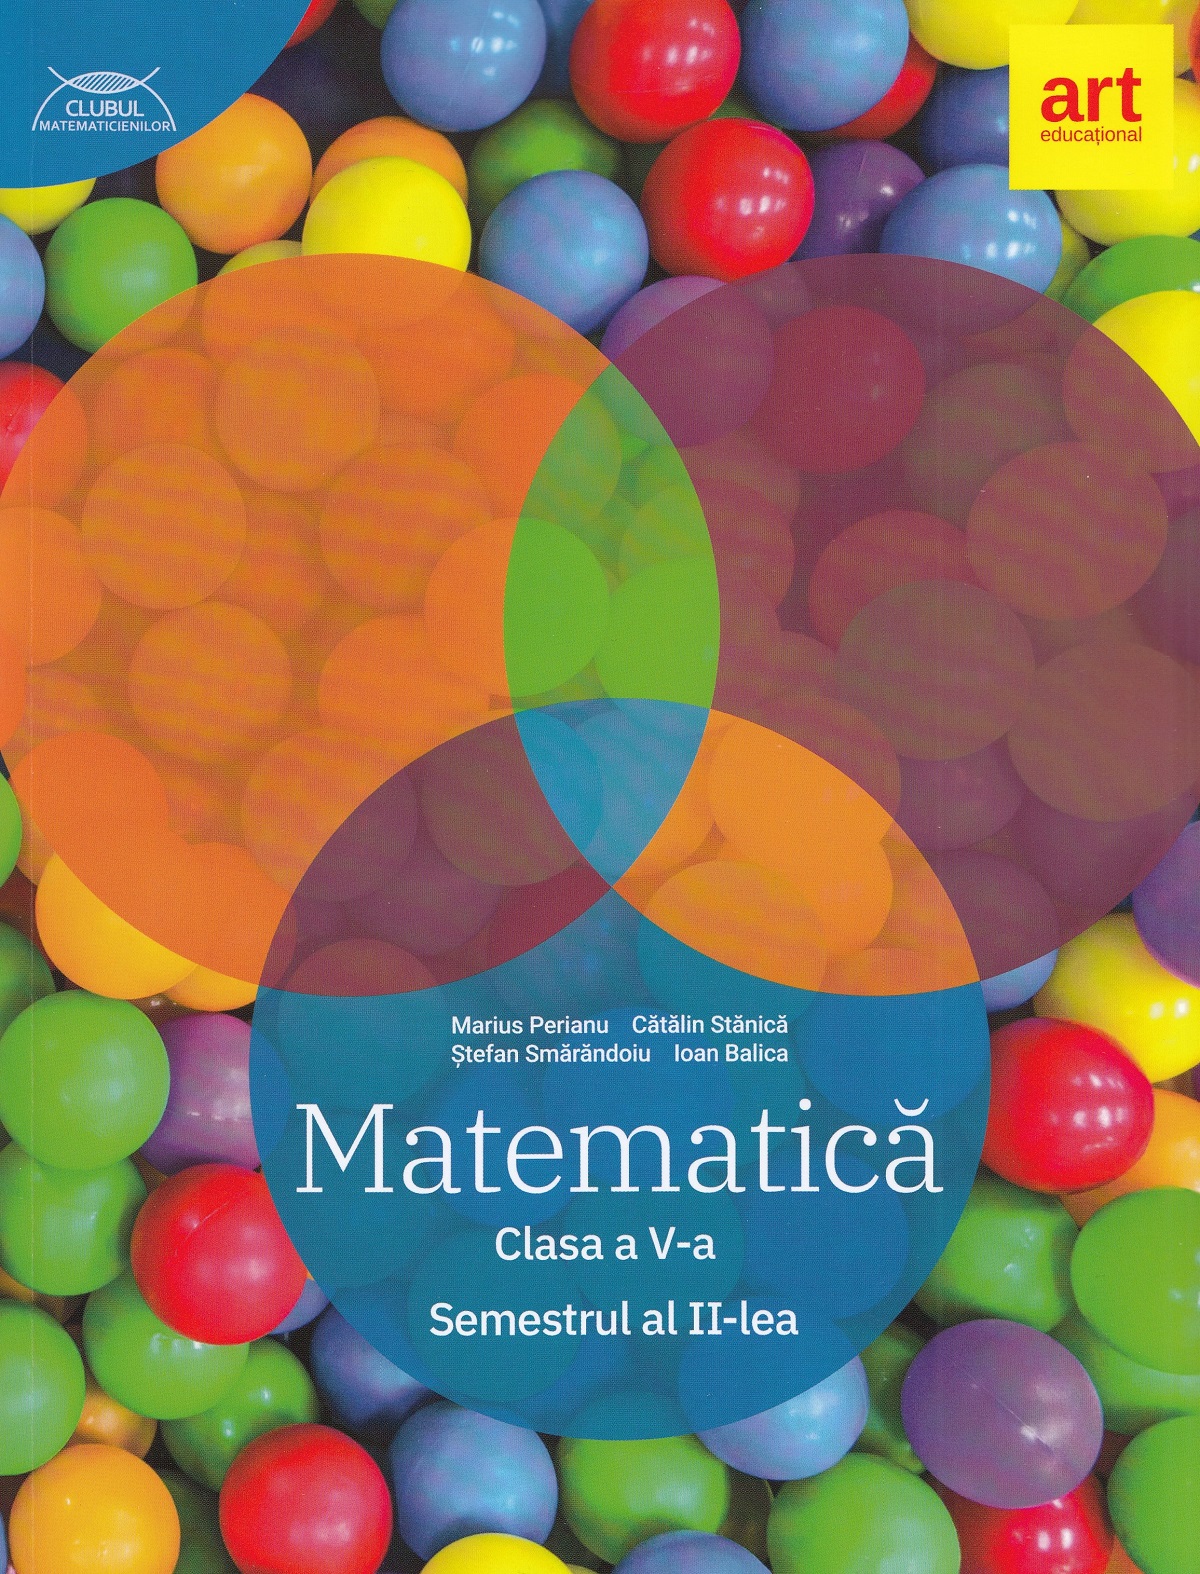 Matematica - Clasa 5 Sem.2 - Traseul albastru - Marius Perianu, Catalin Stanica, Stefan Smarandoiu, Ioan Balica